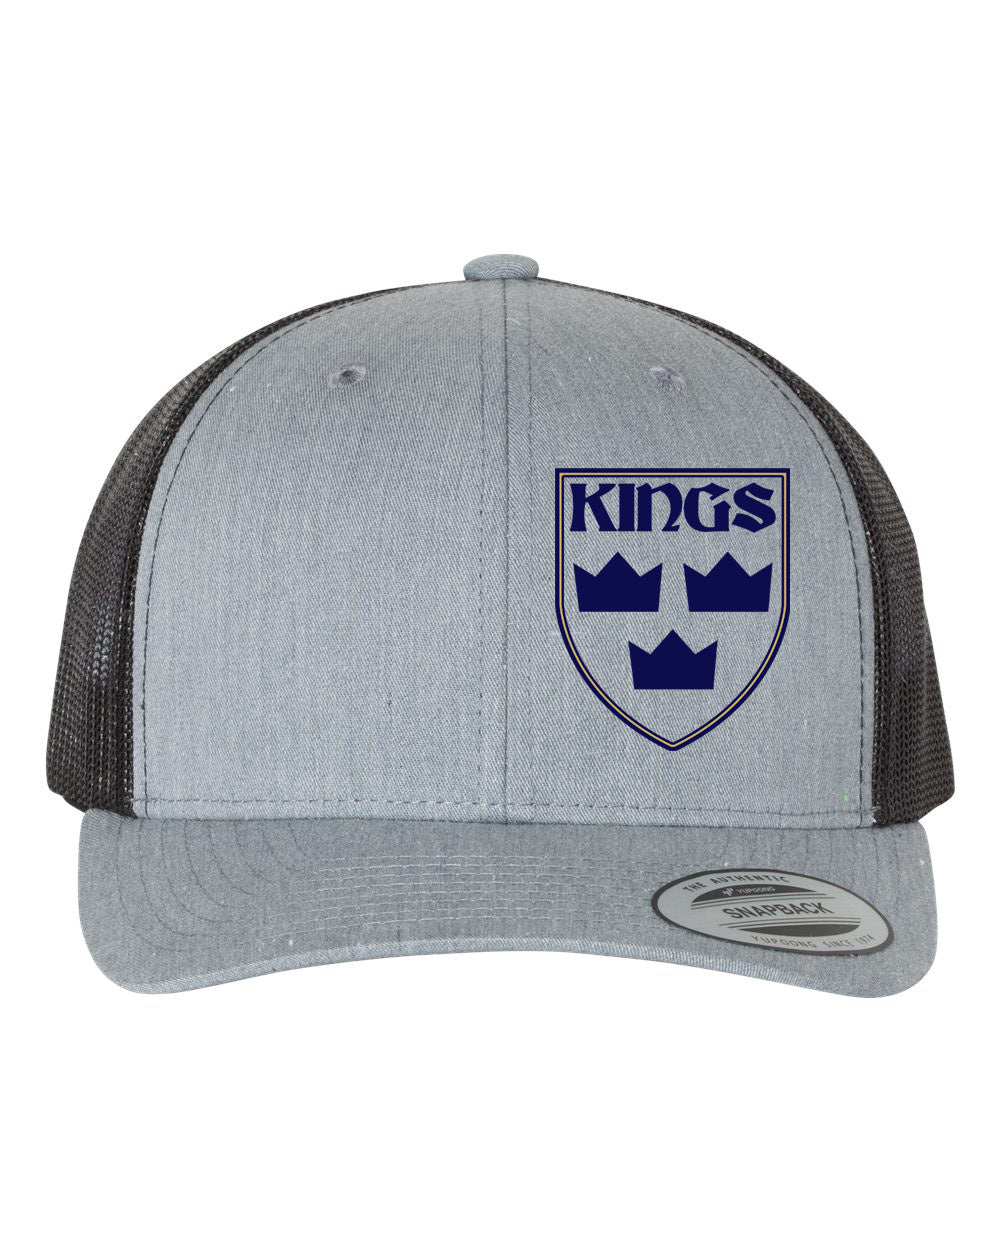 Kings Hockey Logo Trucker Hat